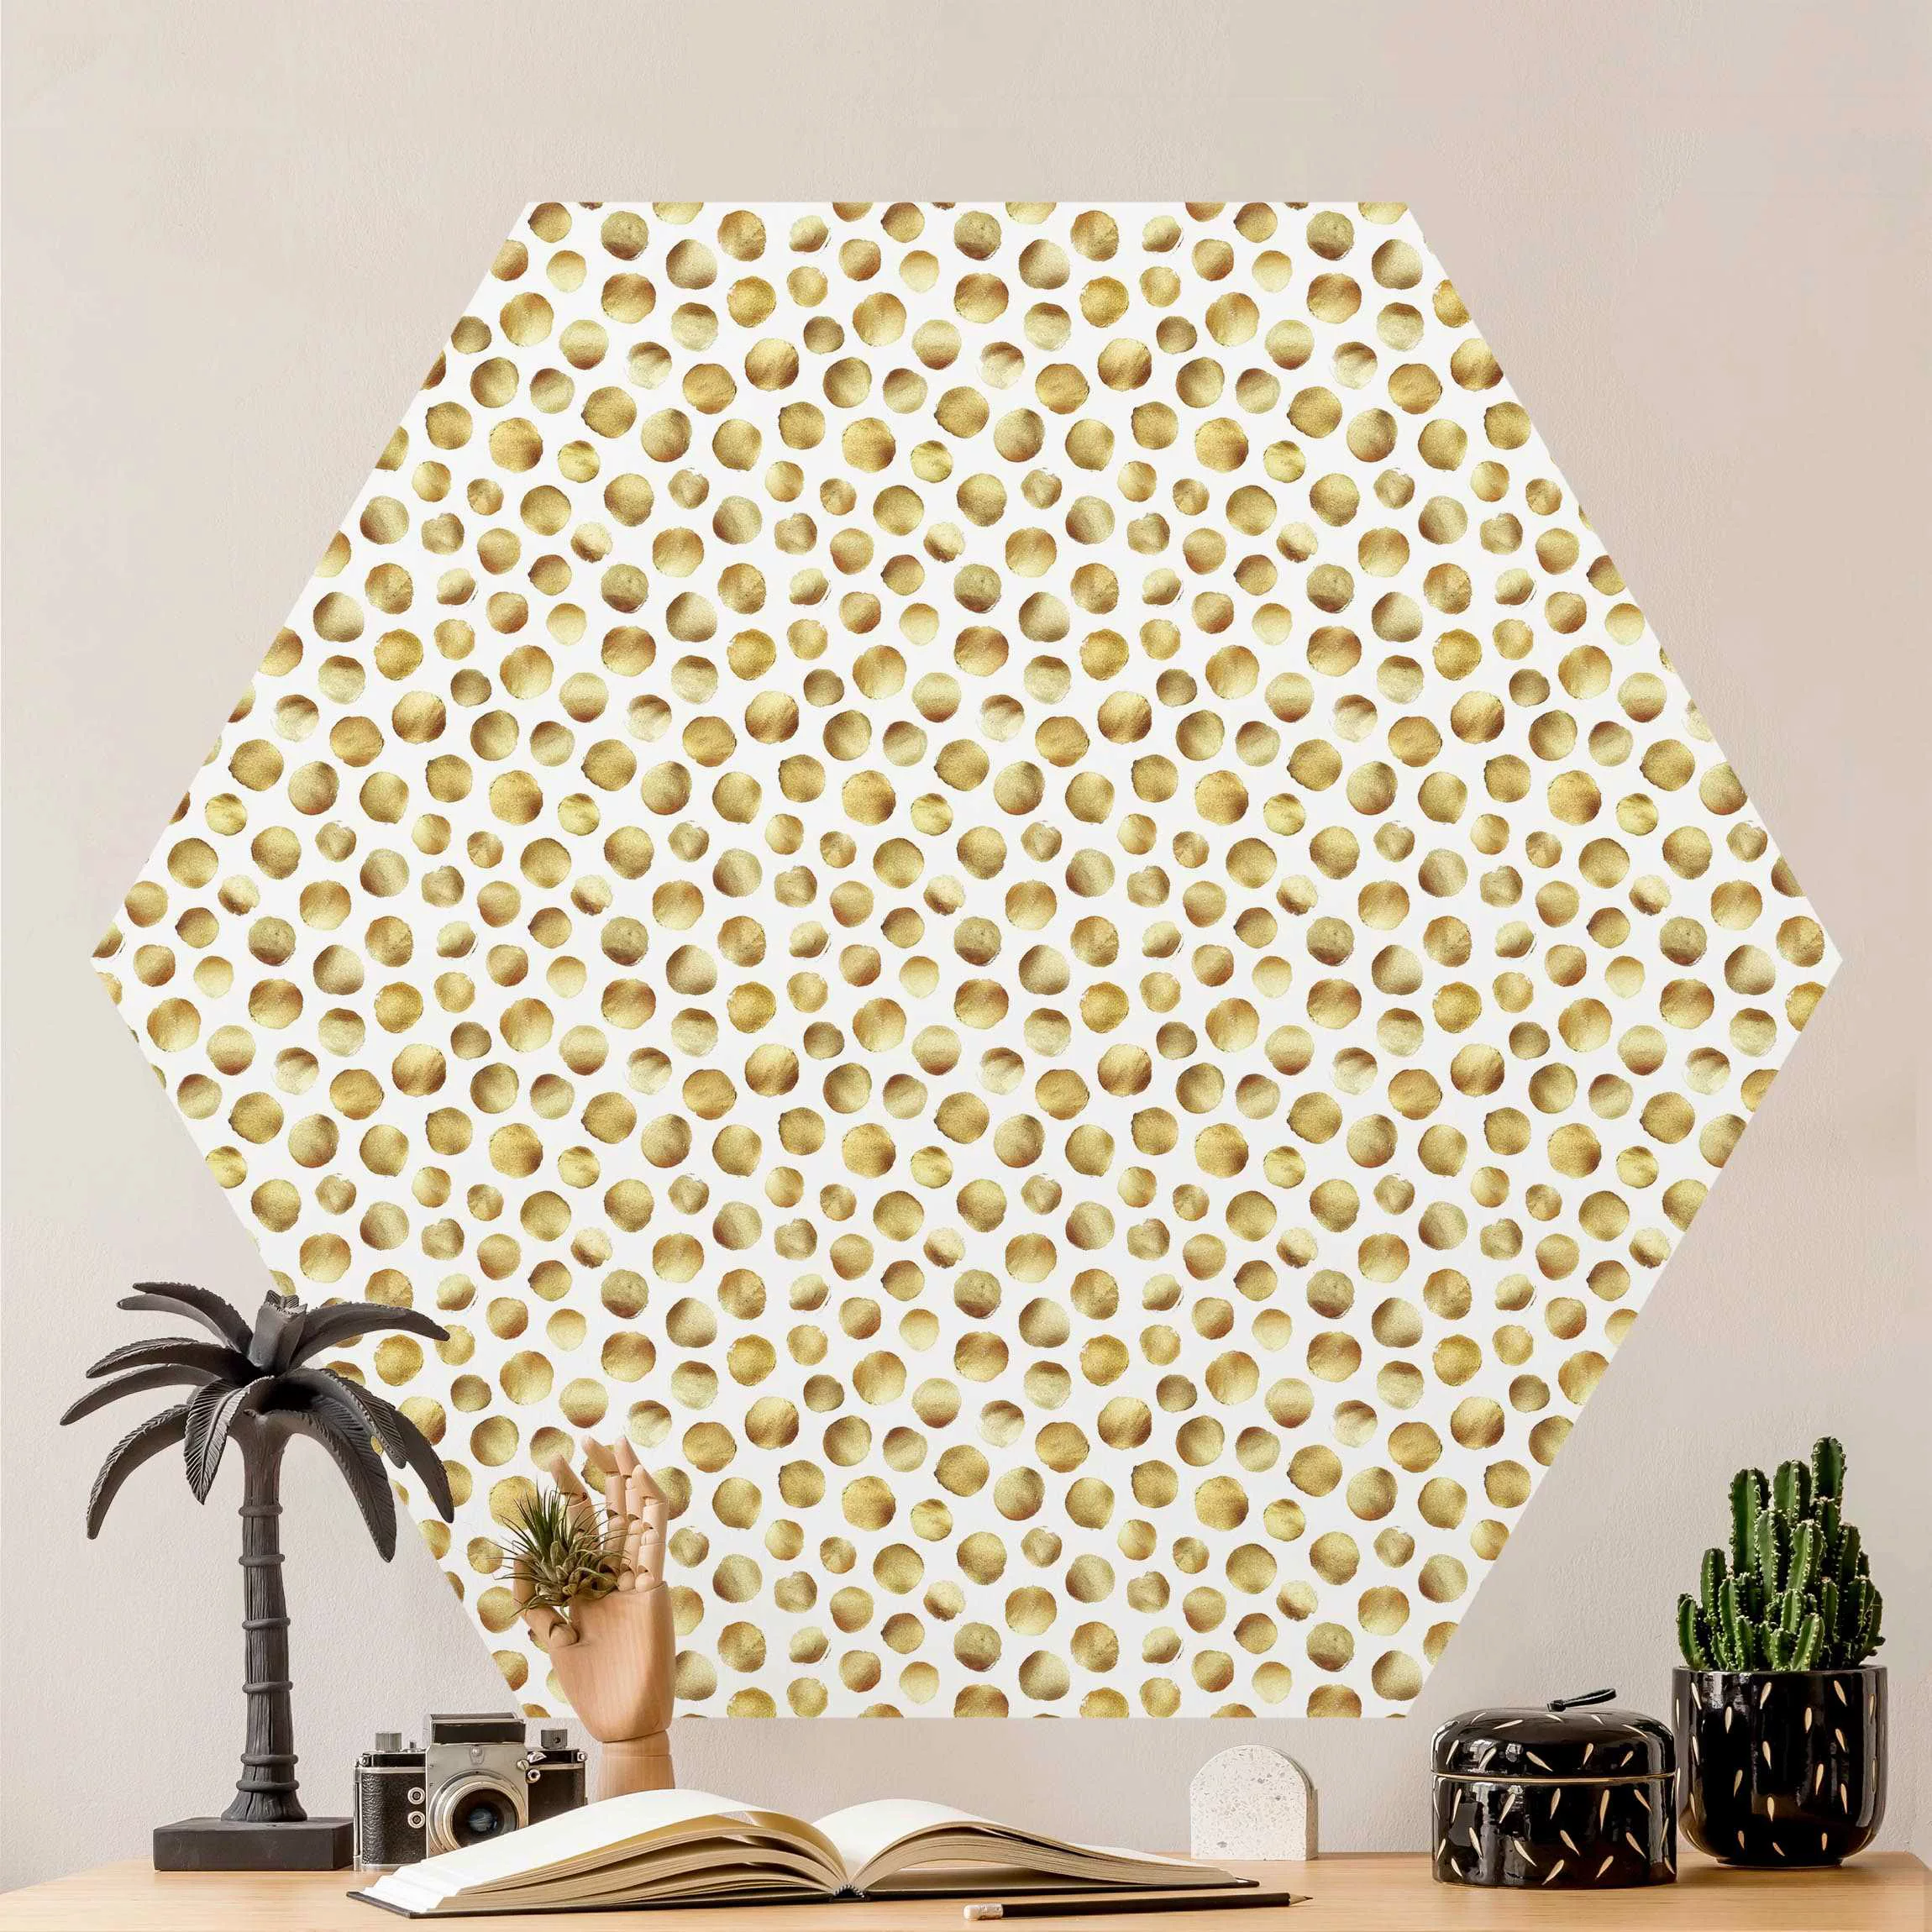 Hexagon Mustertapete selbstklebend Wilde goldene Polkadots günstig online kaufen